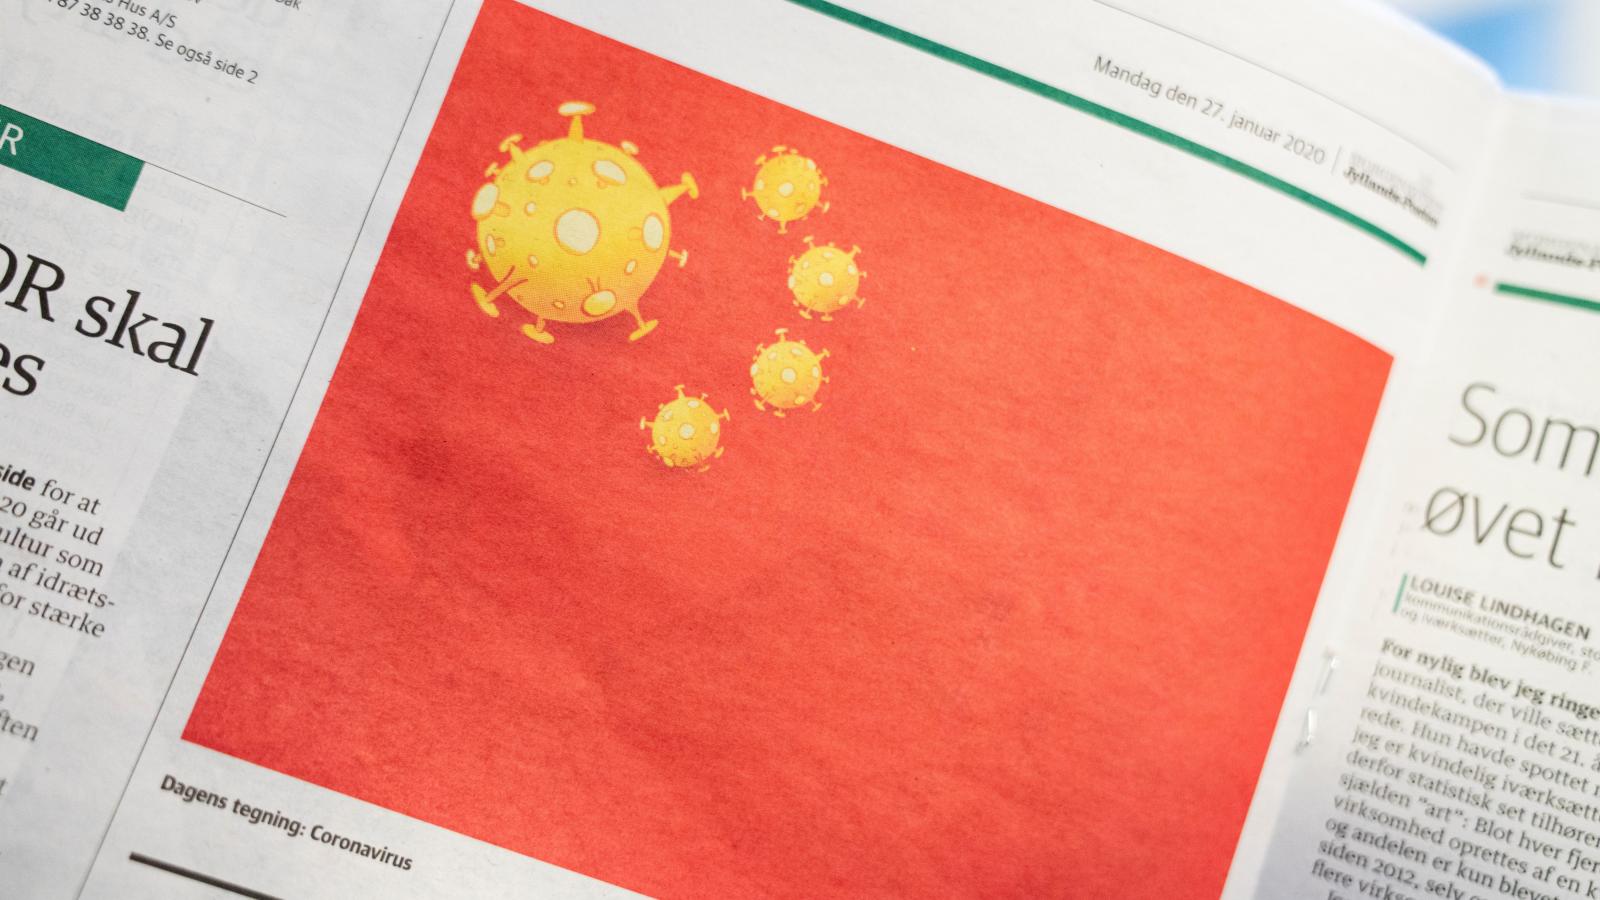 ادعای یک کارشناس: چین برای ایجاد تعادل در جهان ویروس کرونا را منتشر کرده است